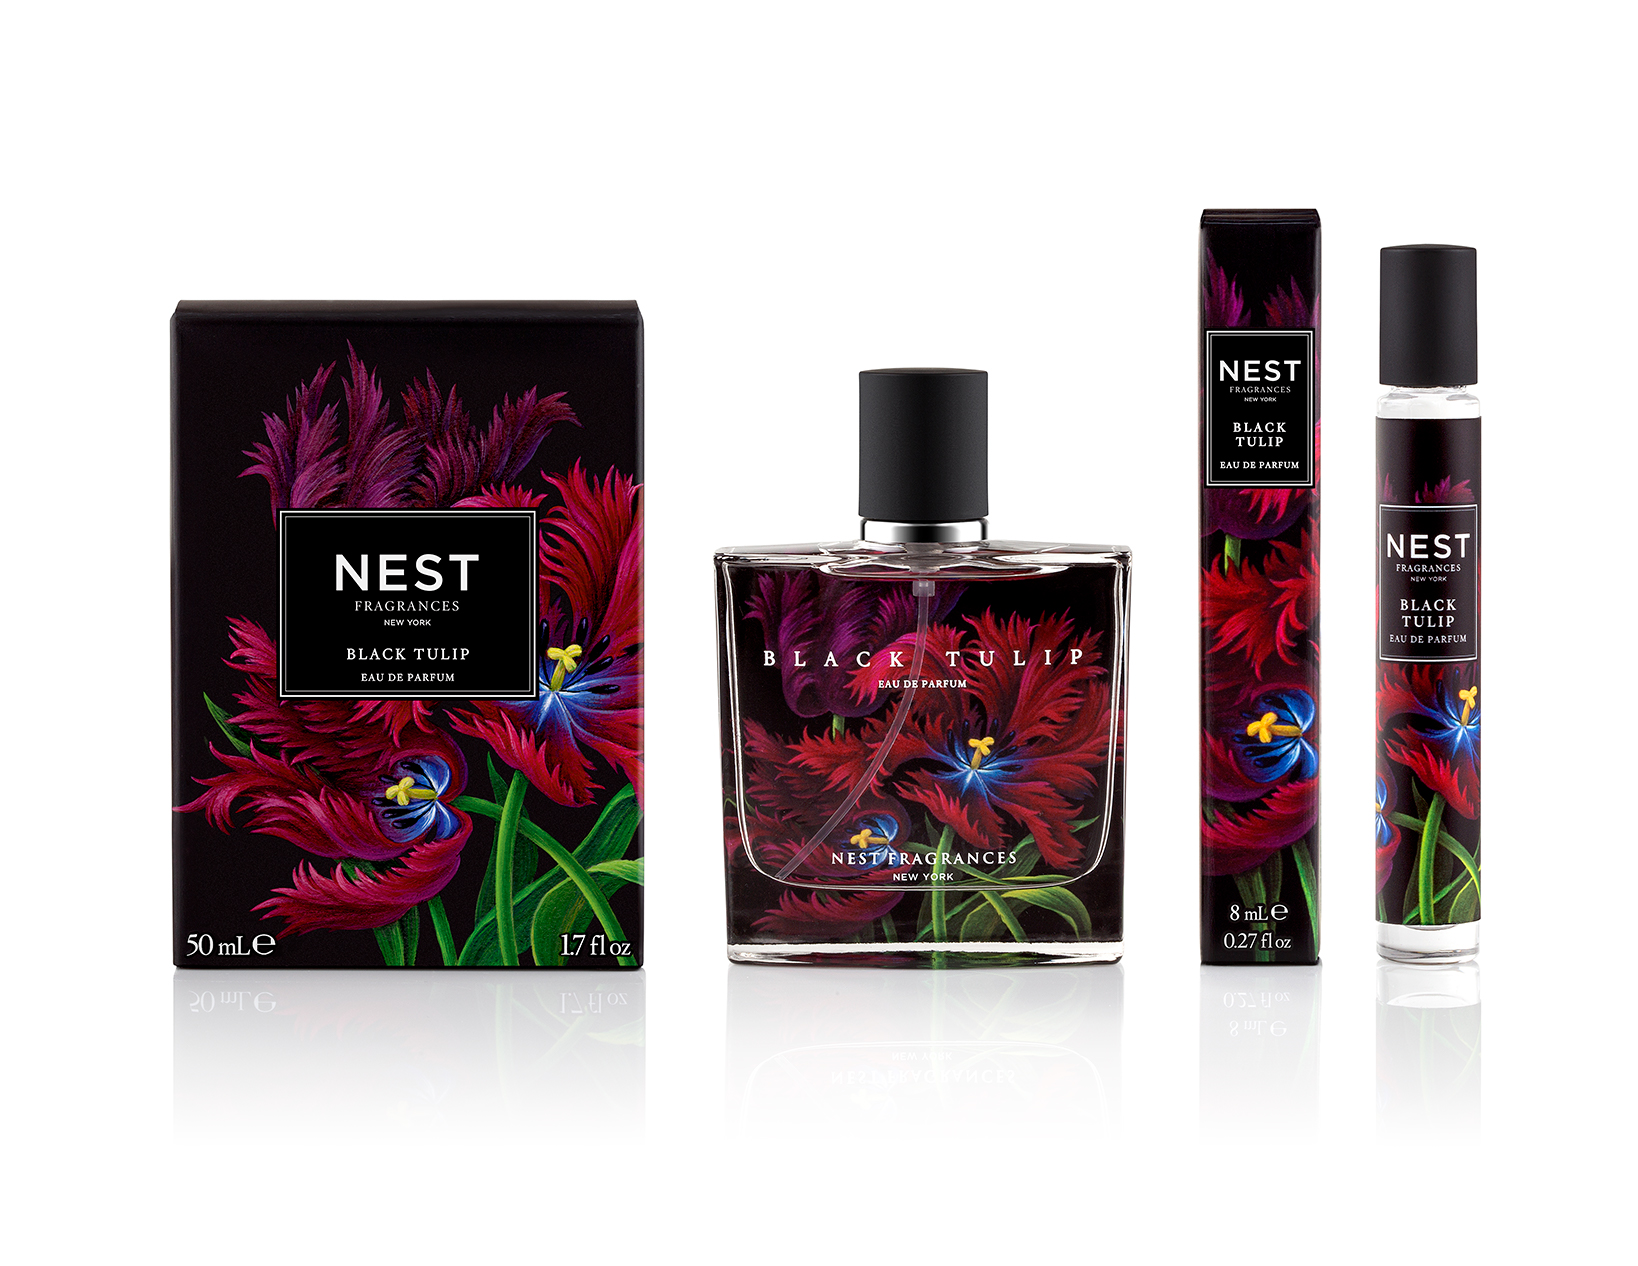 Black Tulip eau de parfum collection by NEST Fragrances